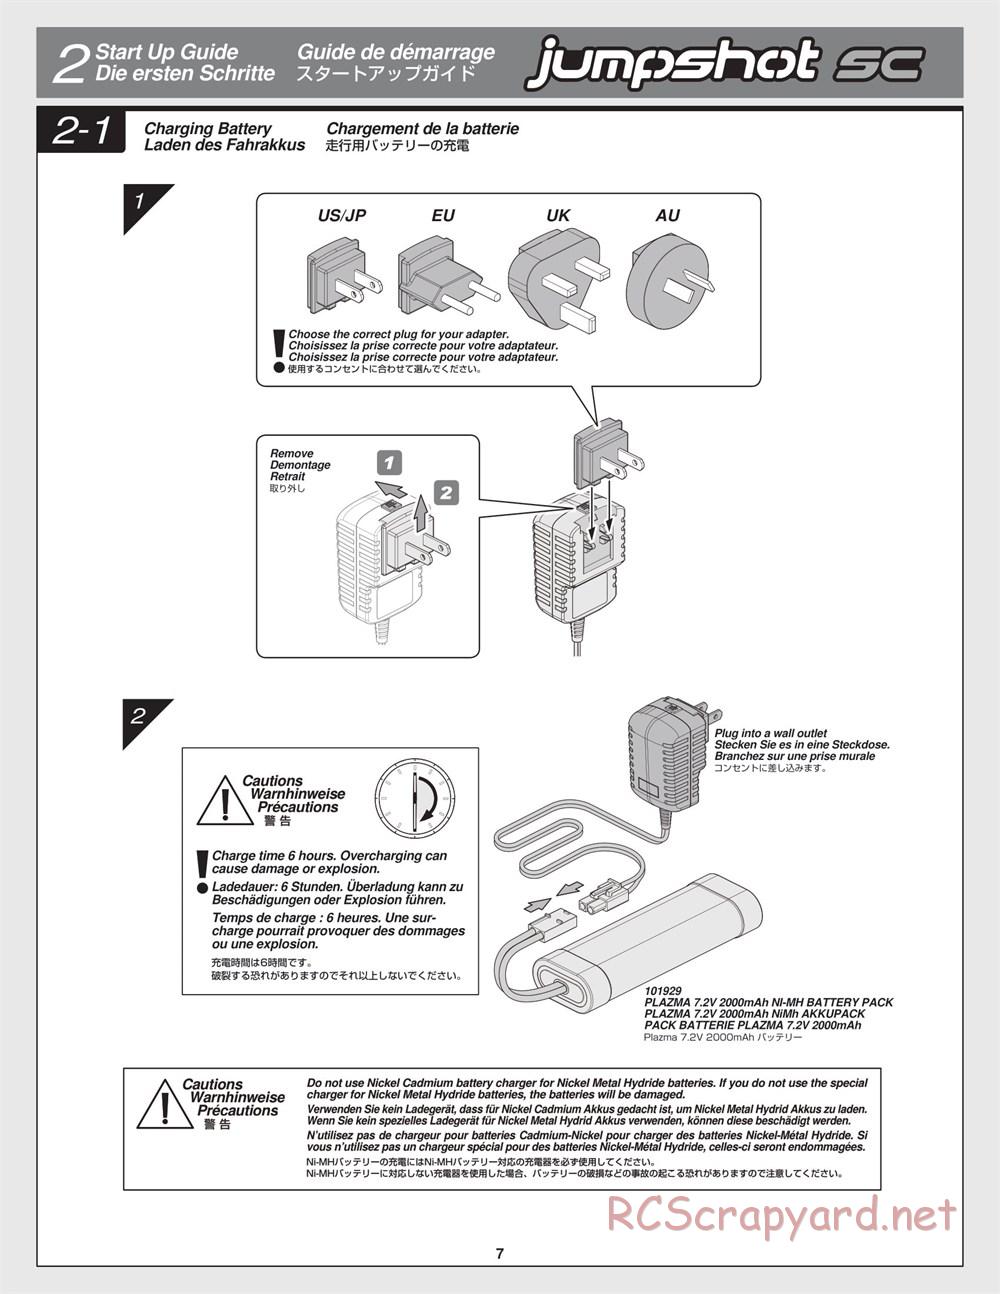 HPI - Jumpshot SC - Manual - Page 7